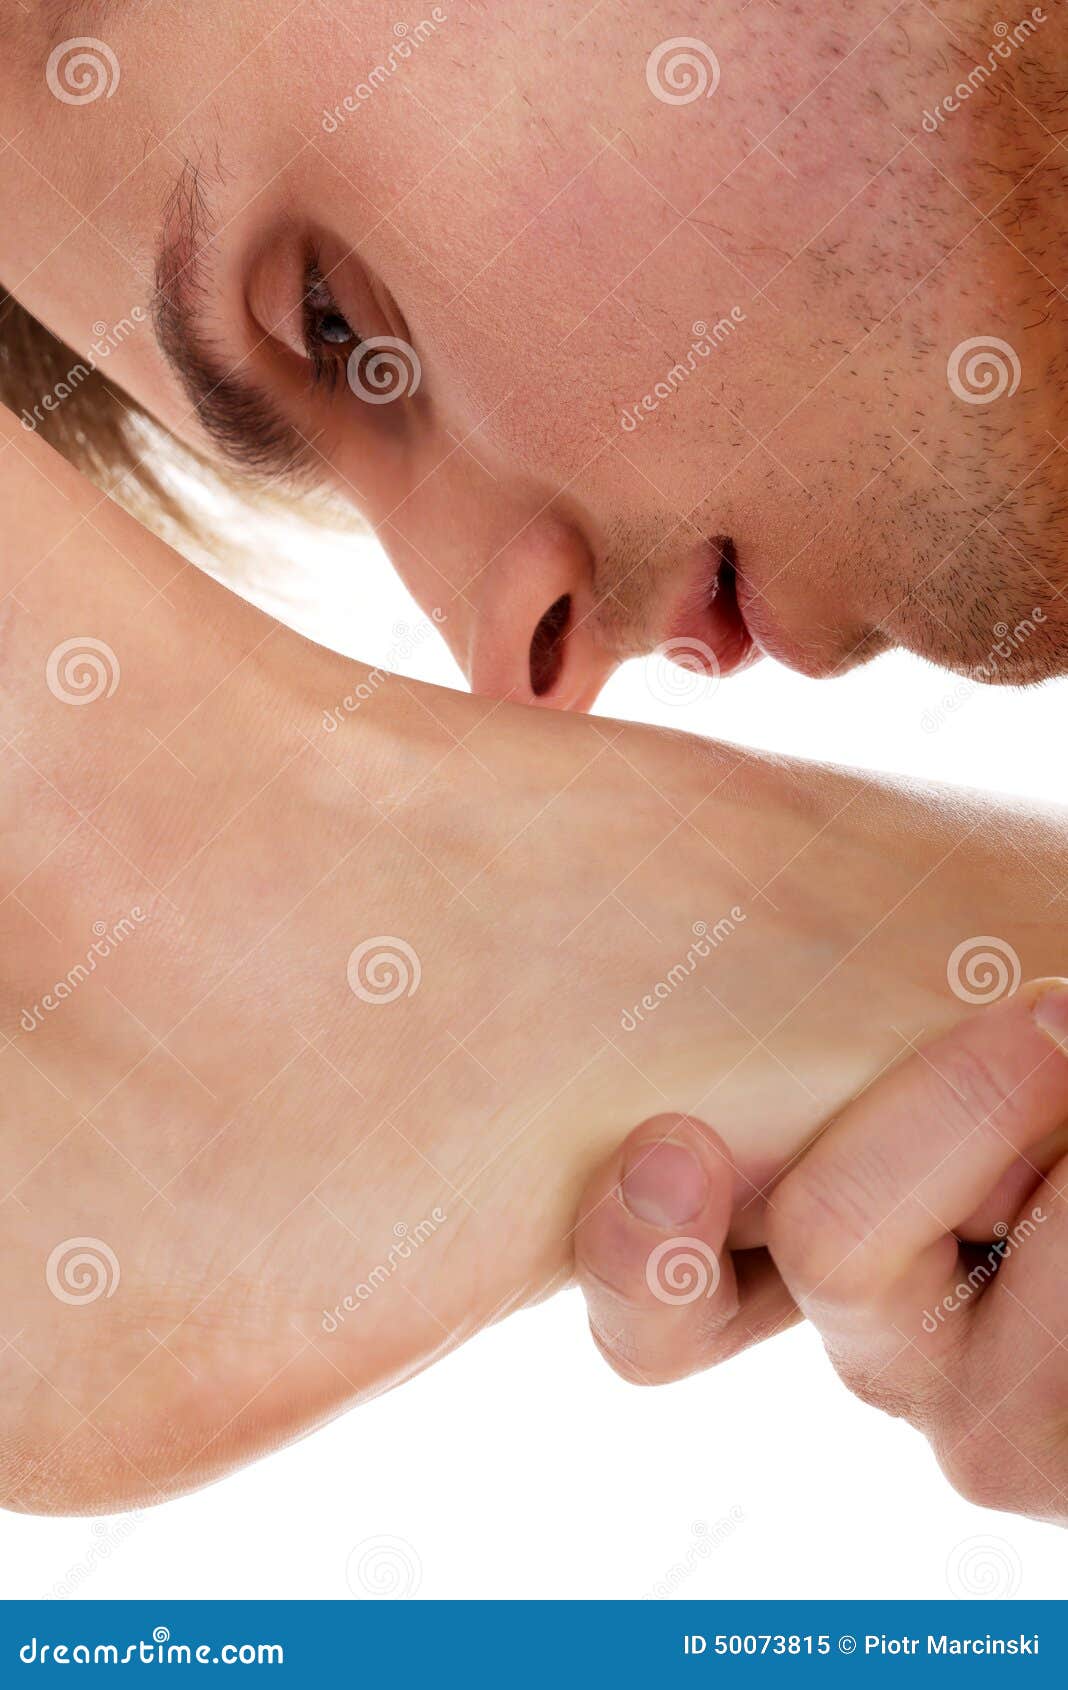 Мужчина целует ножки. Целует ноги. Целует стопы. Поцелуй женских ног. Мужчина целует ноги.